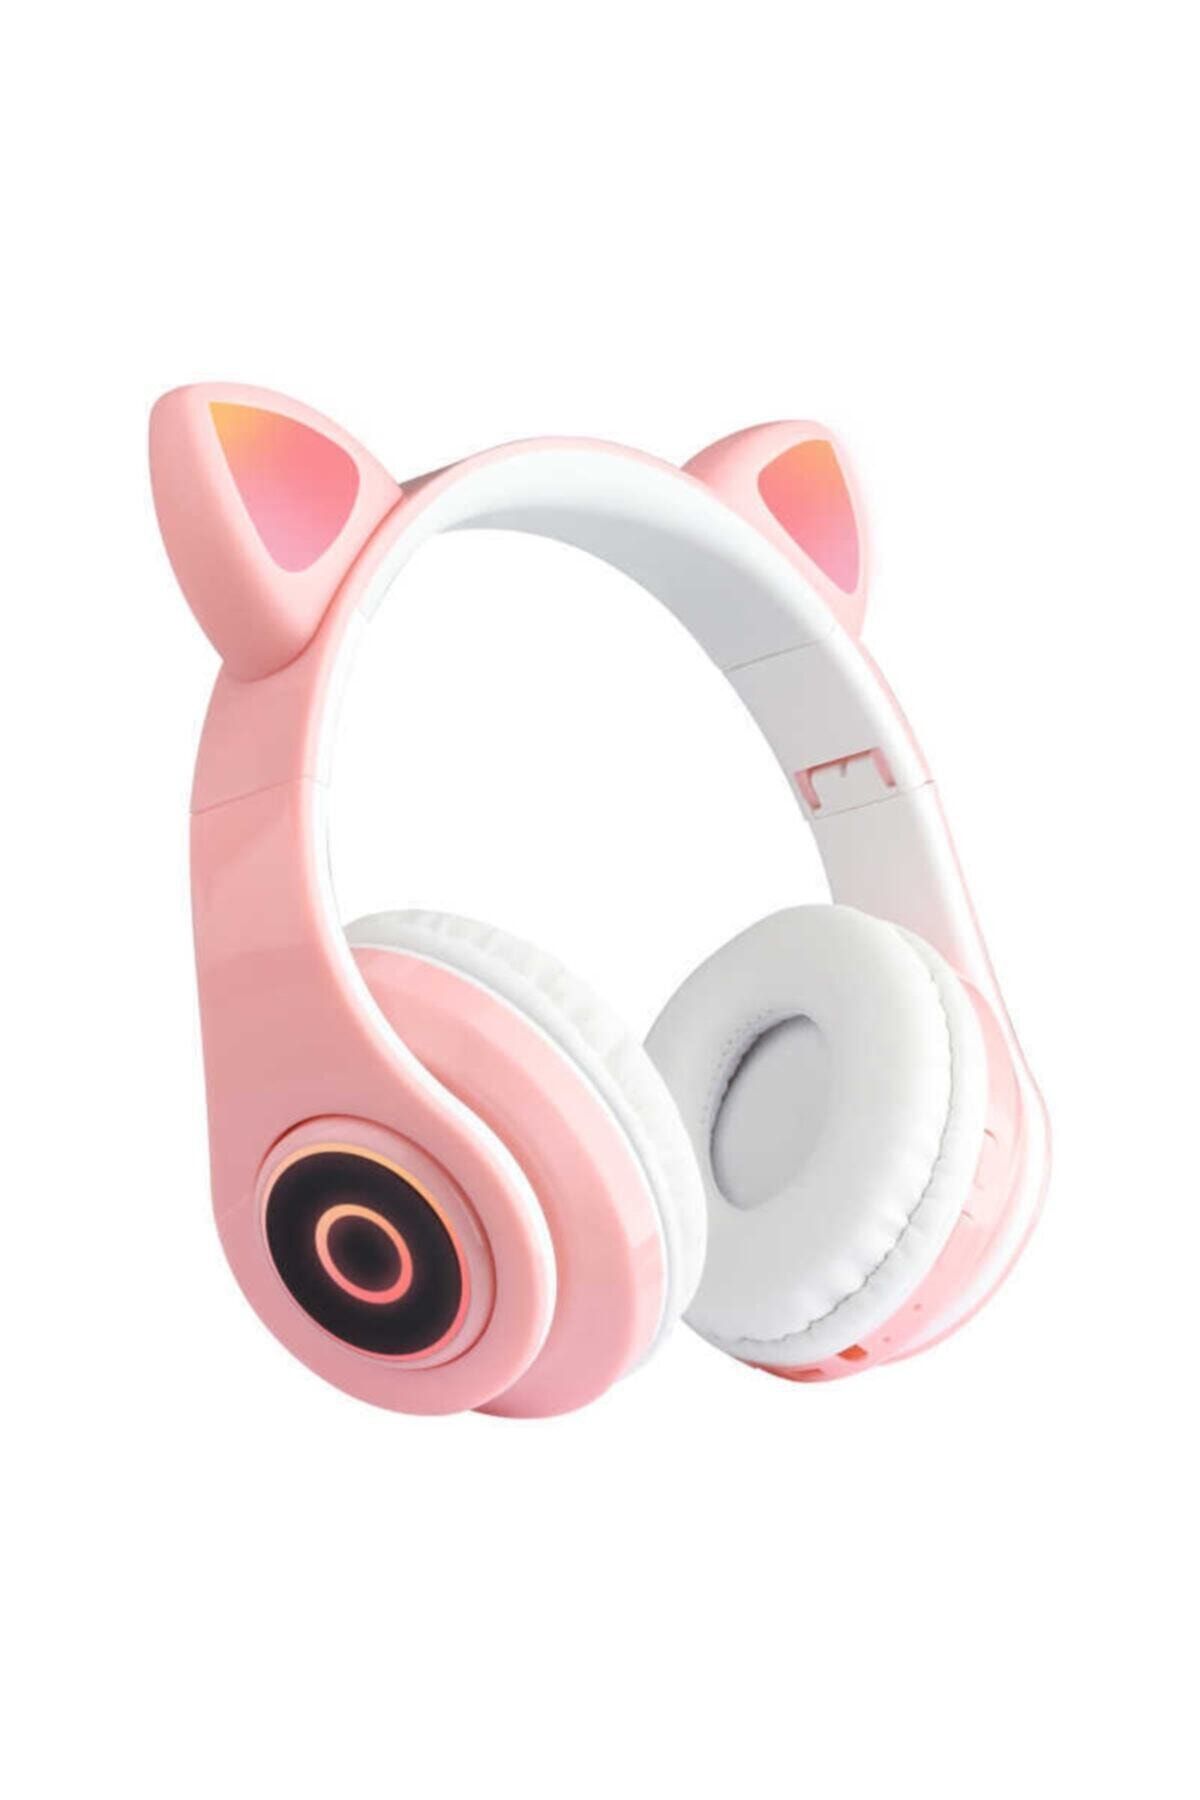 BLUPPLE B39 Kedili Katlanabilir Kulak Üstü Kablosuz Bluetooth 5.0 Kulaklık Ledli Kız Kadın Pembe